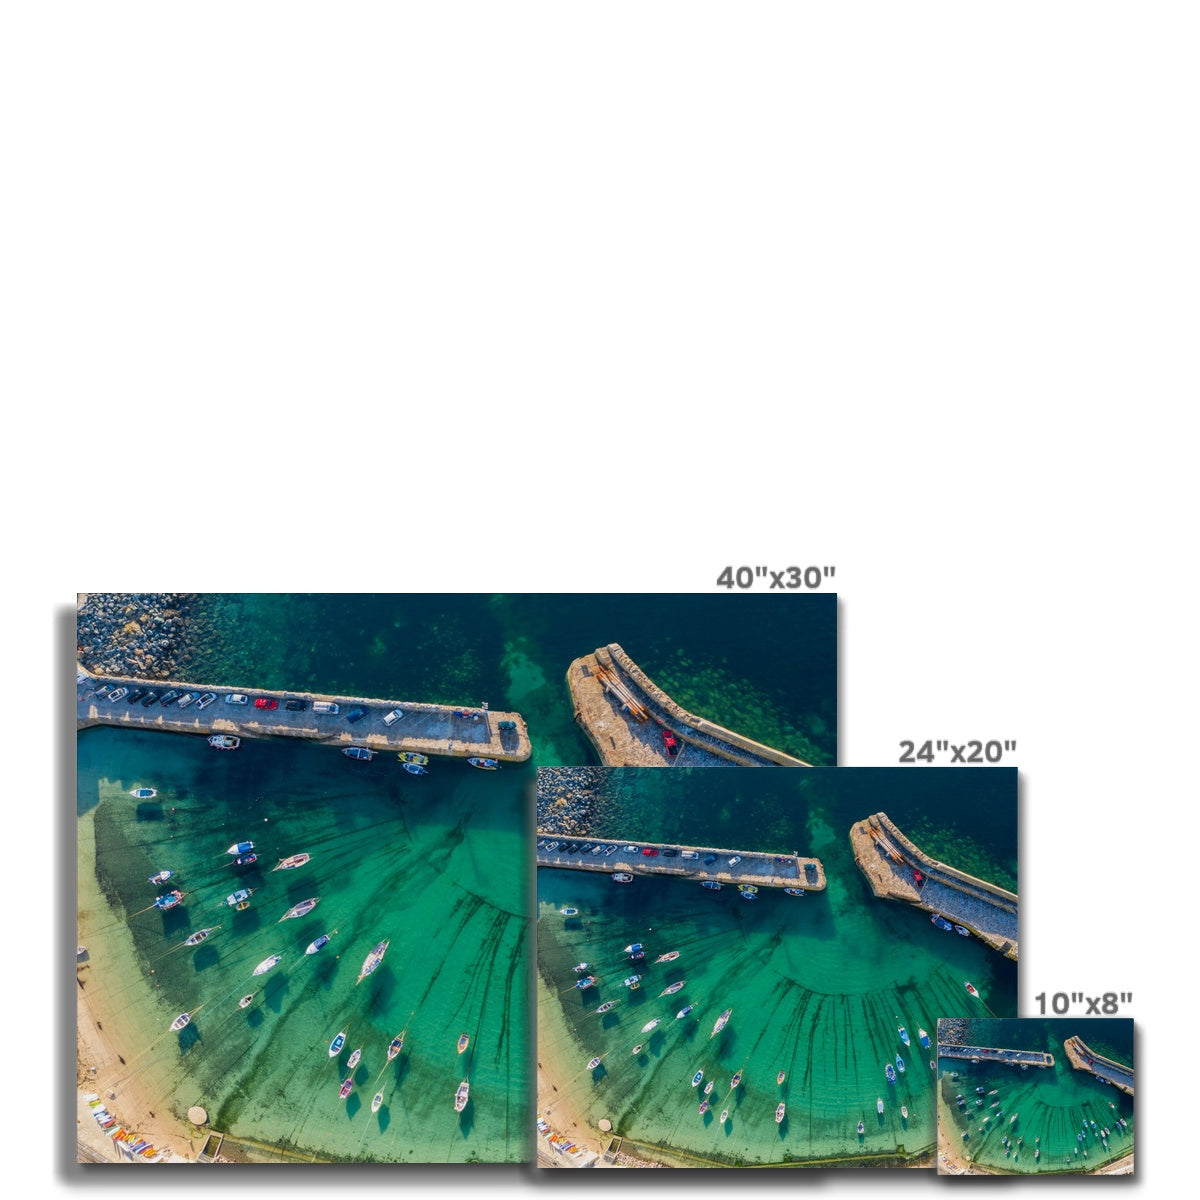 mousehole harbour canvas sizes